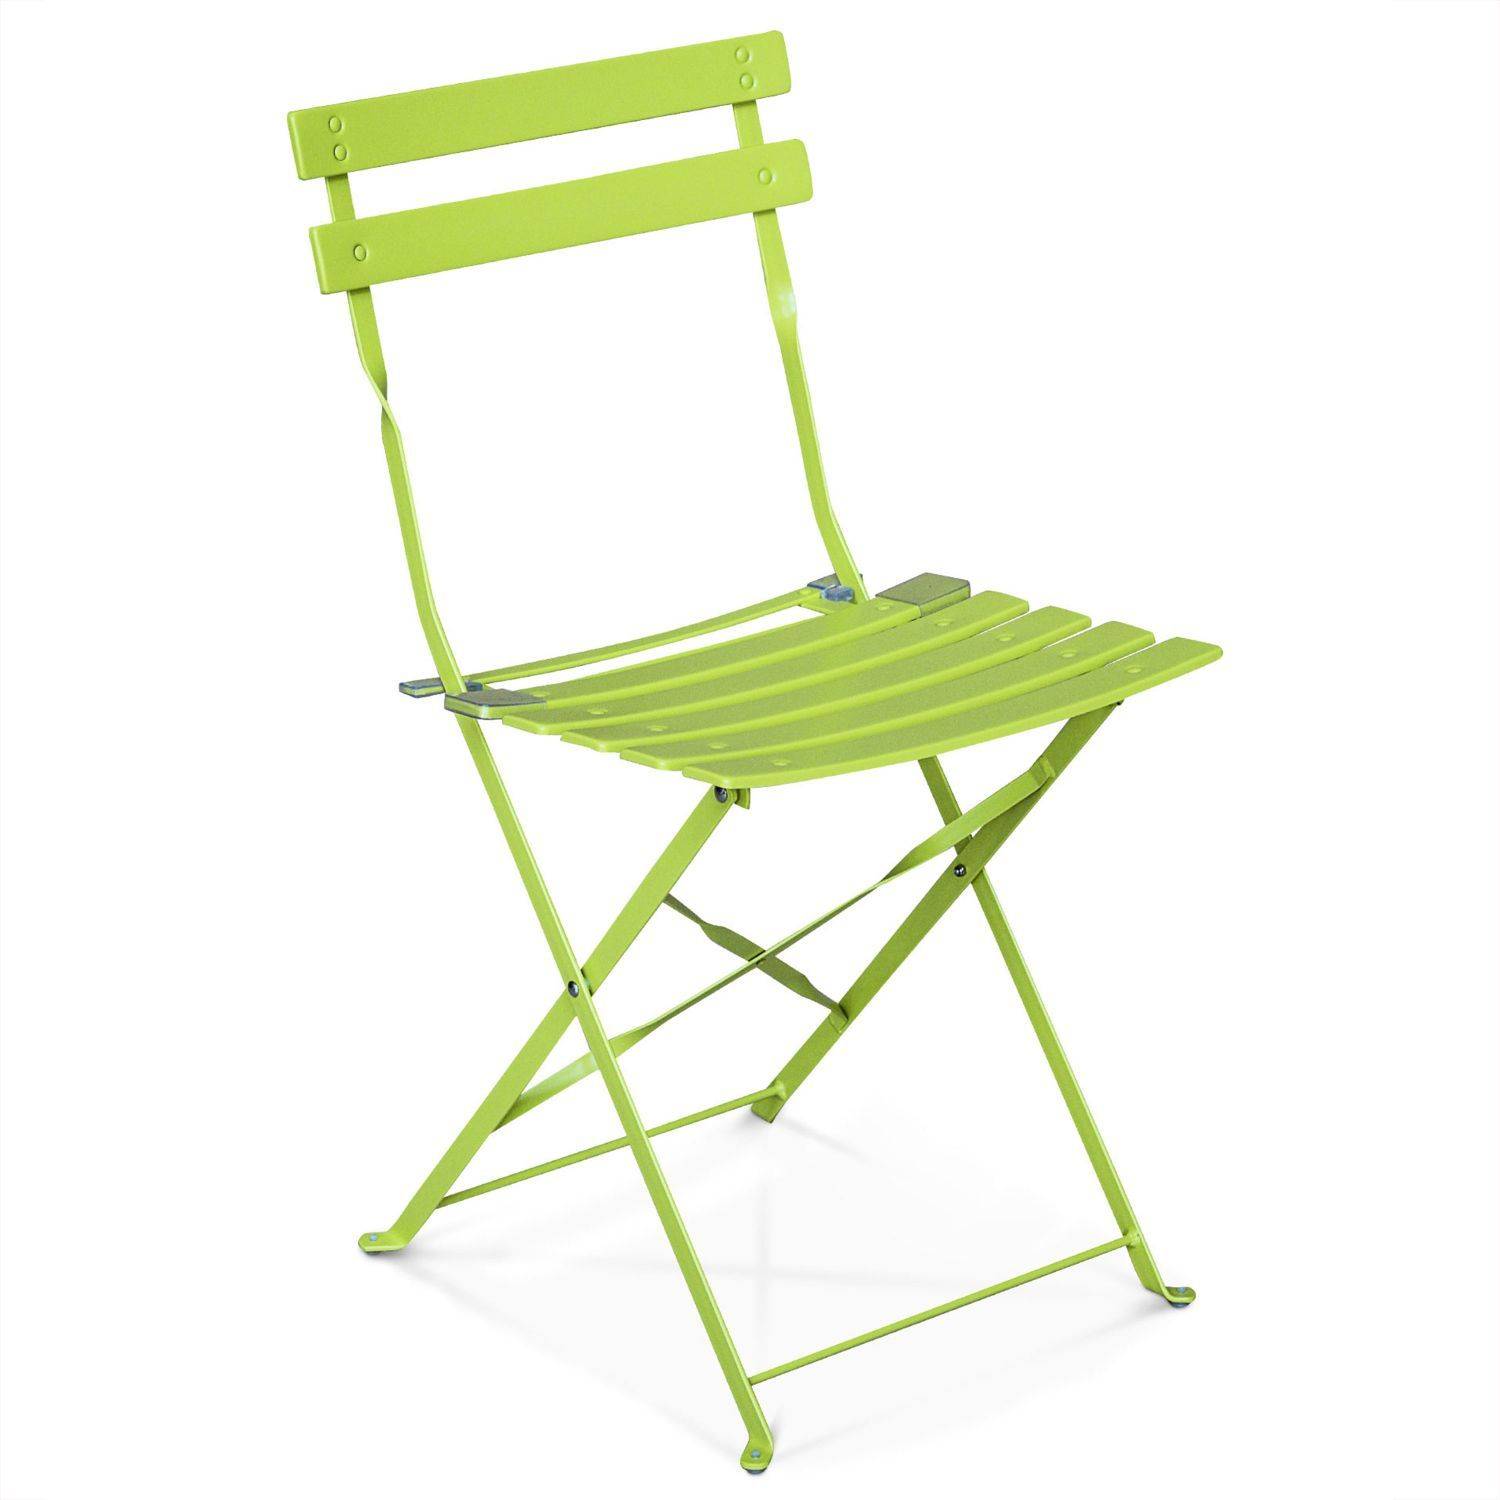 Klappbare Bistro-Gartenmöbel - Emilia quadratisch grün - Quadratischer Tisch 70x70 cm mit zwei Klappstühlen, pulverbeschichtetem Stahl, Stühlen mit gebogenen Latten Photo4